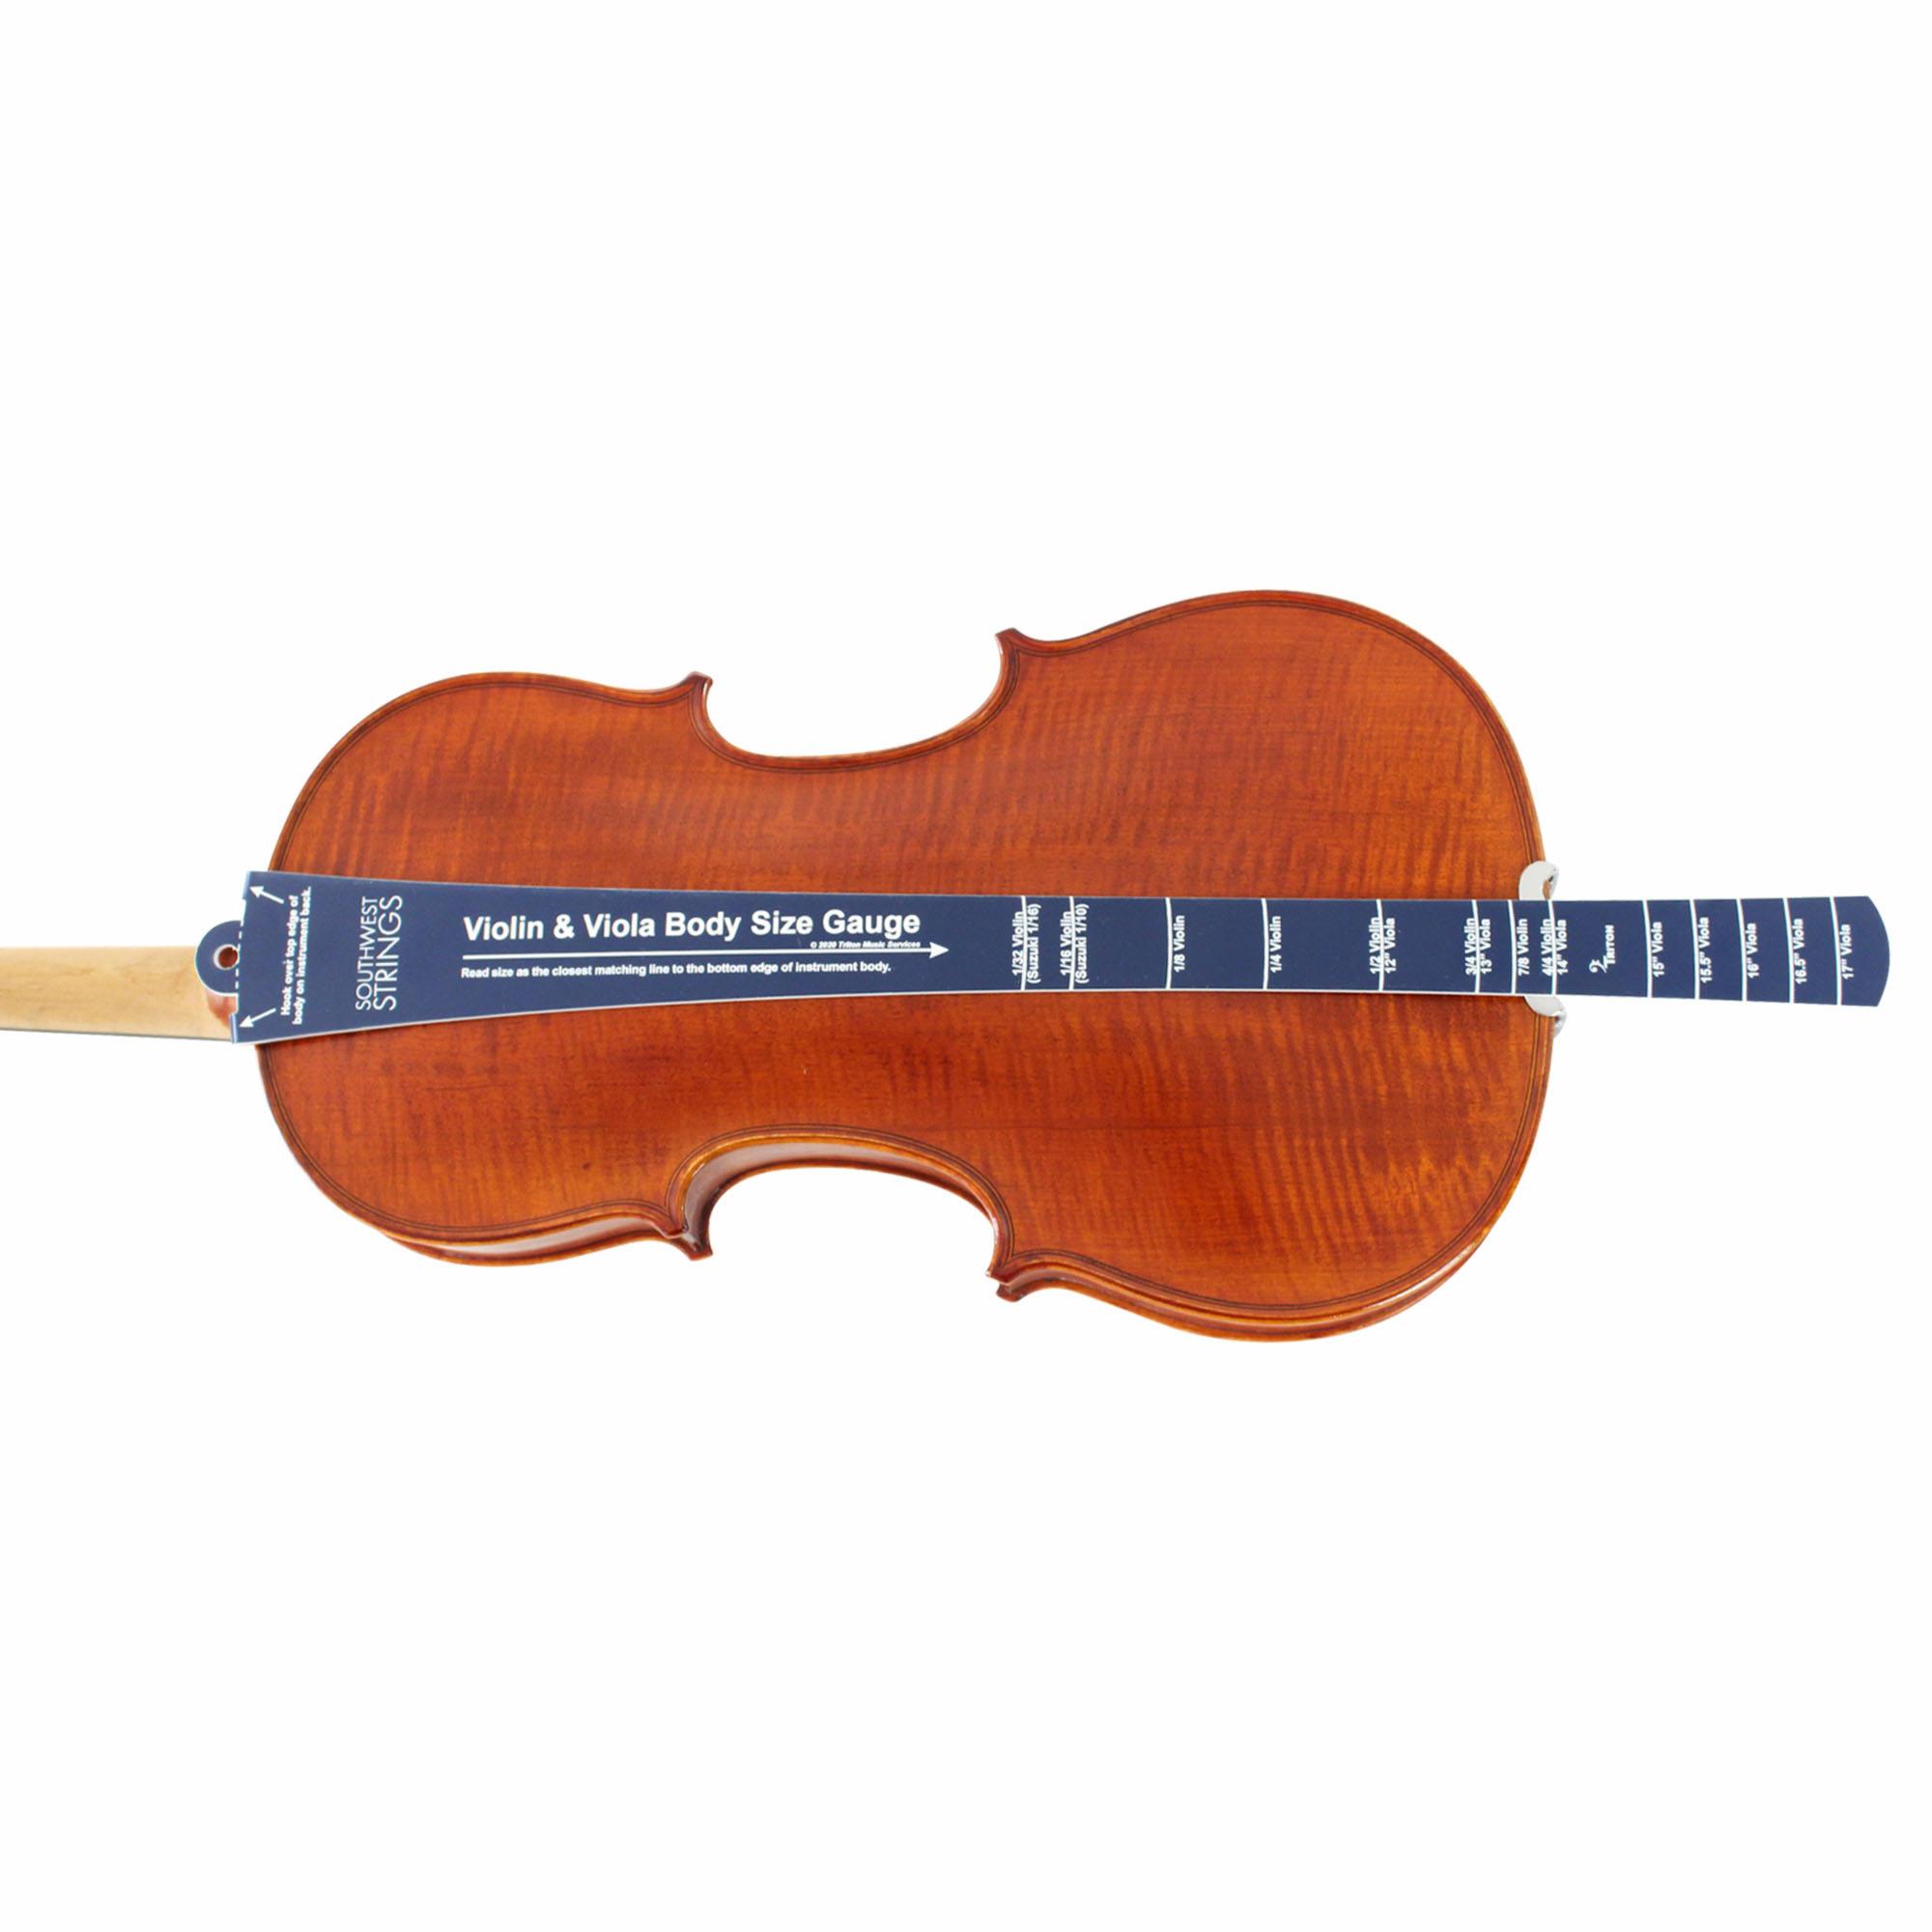 Southwest Strings Violin/Viola Size Gauge